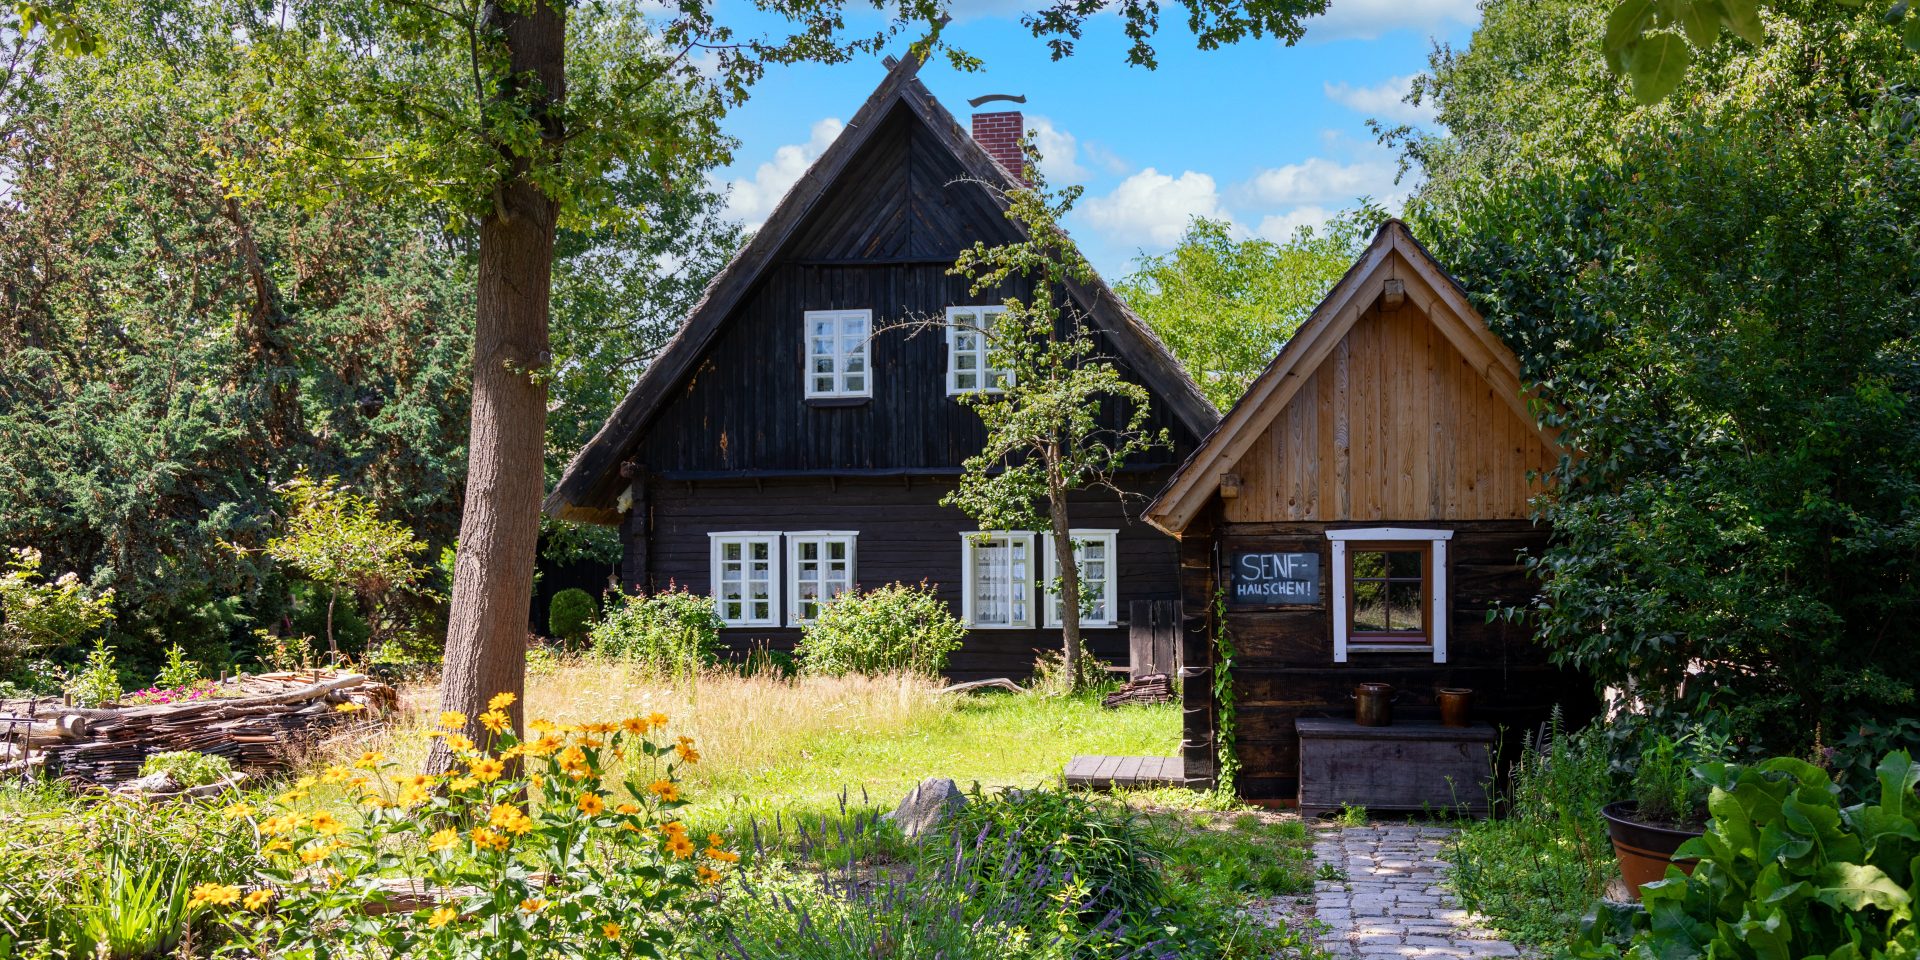 Ein kleines Holzhaus mit Garten und einem Schuppen davor.